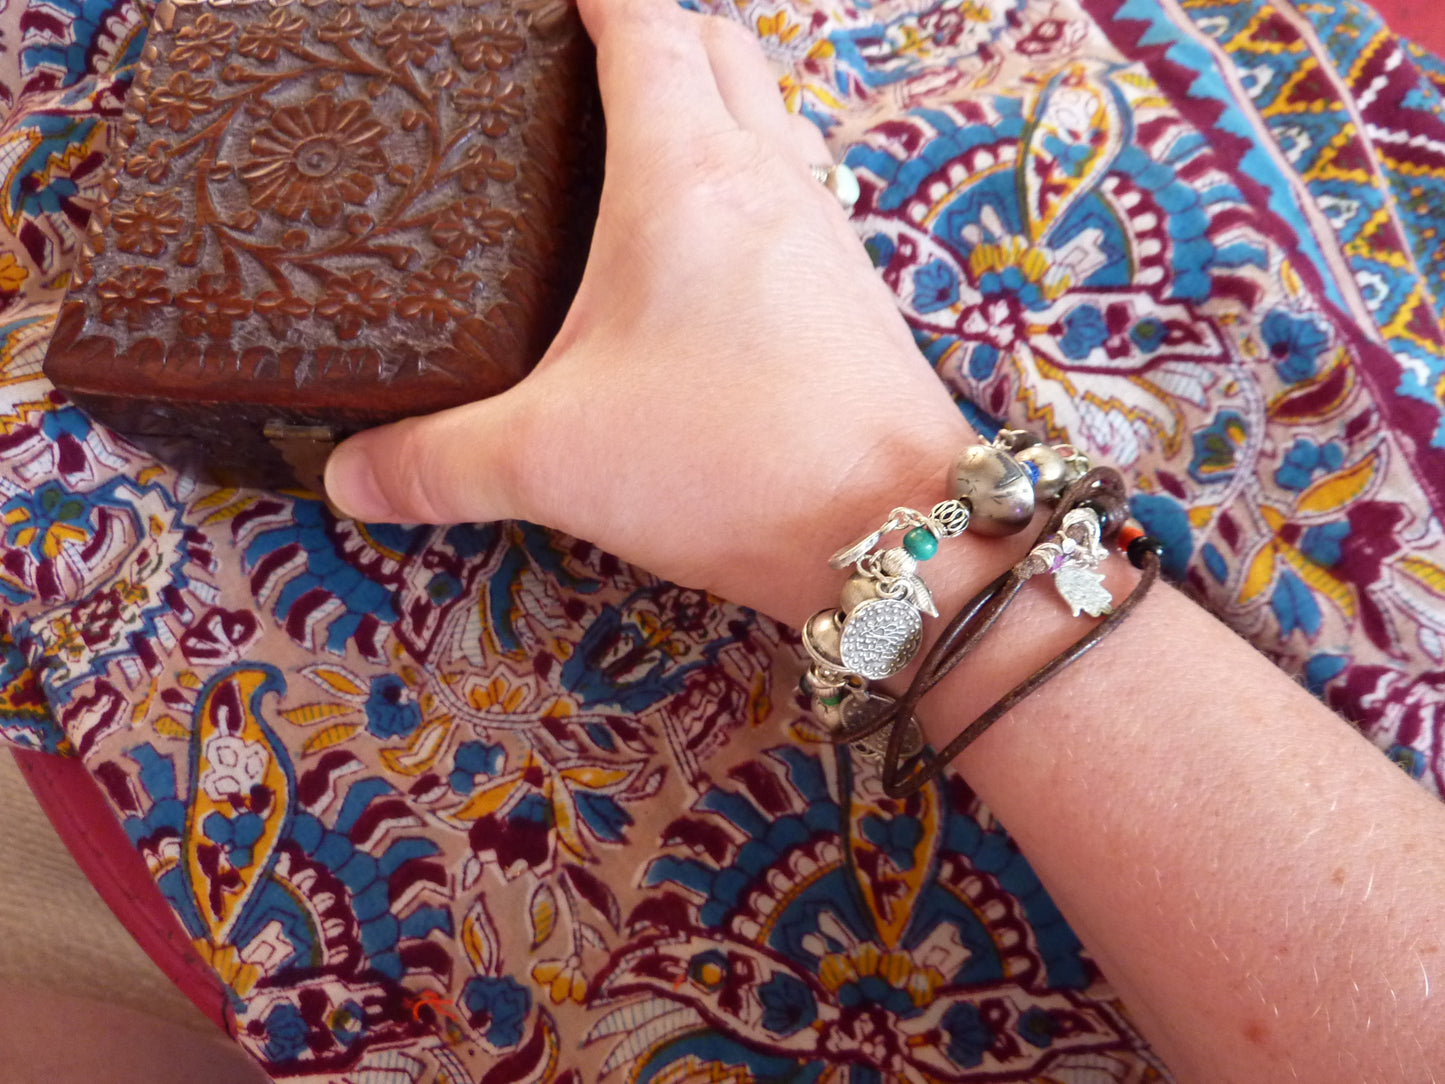 Collier bracelet d'inspiration tzigane - argent, perles ethniques, breloques et pierres semi-précieuses - pièce unique